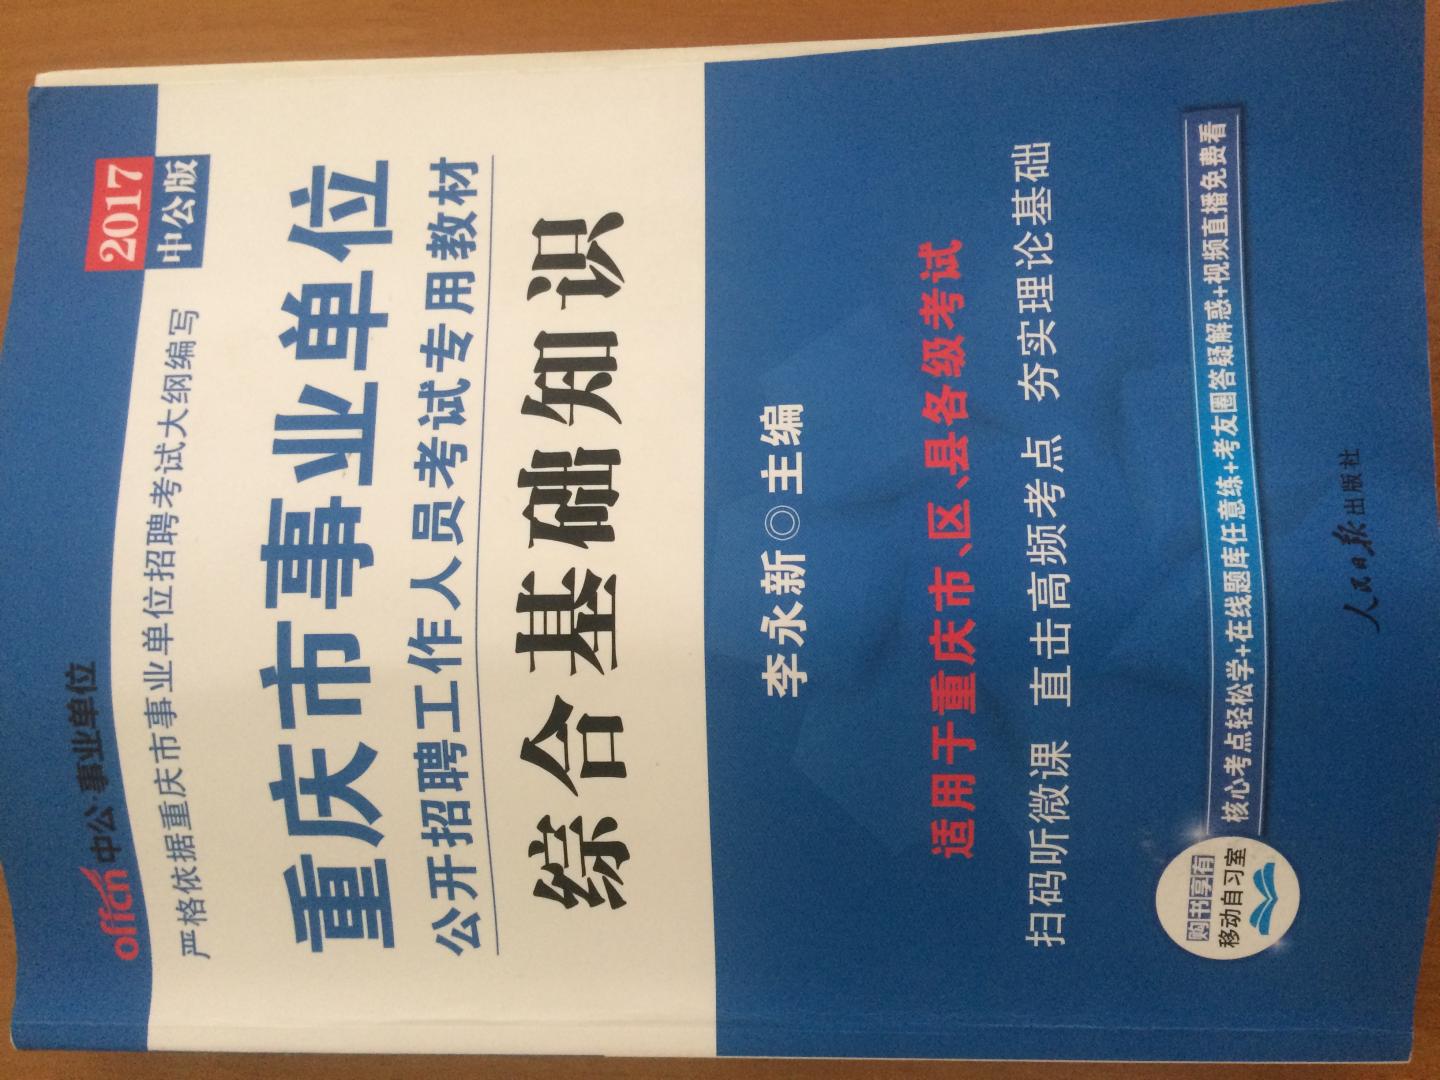 书很快就送到了，中公出版的还是很不错的事业考试教材，严格按照重庆市人力资源网上的考试大纲编写